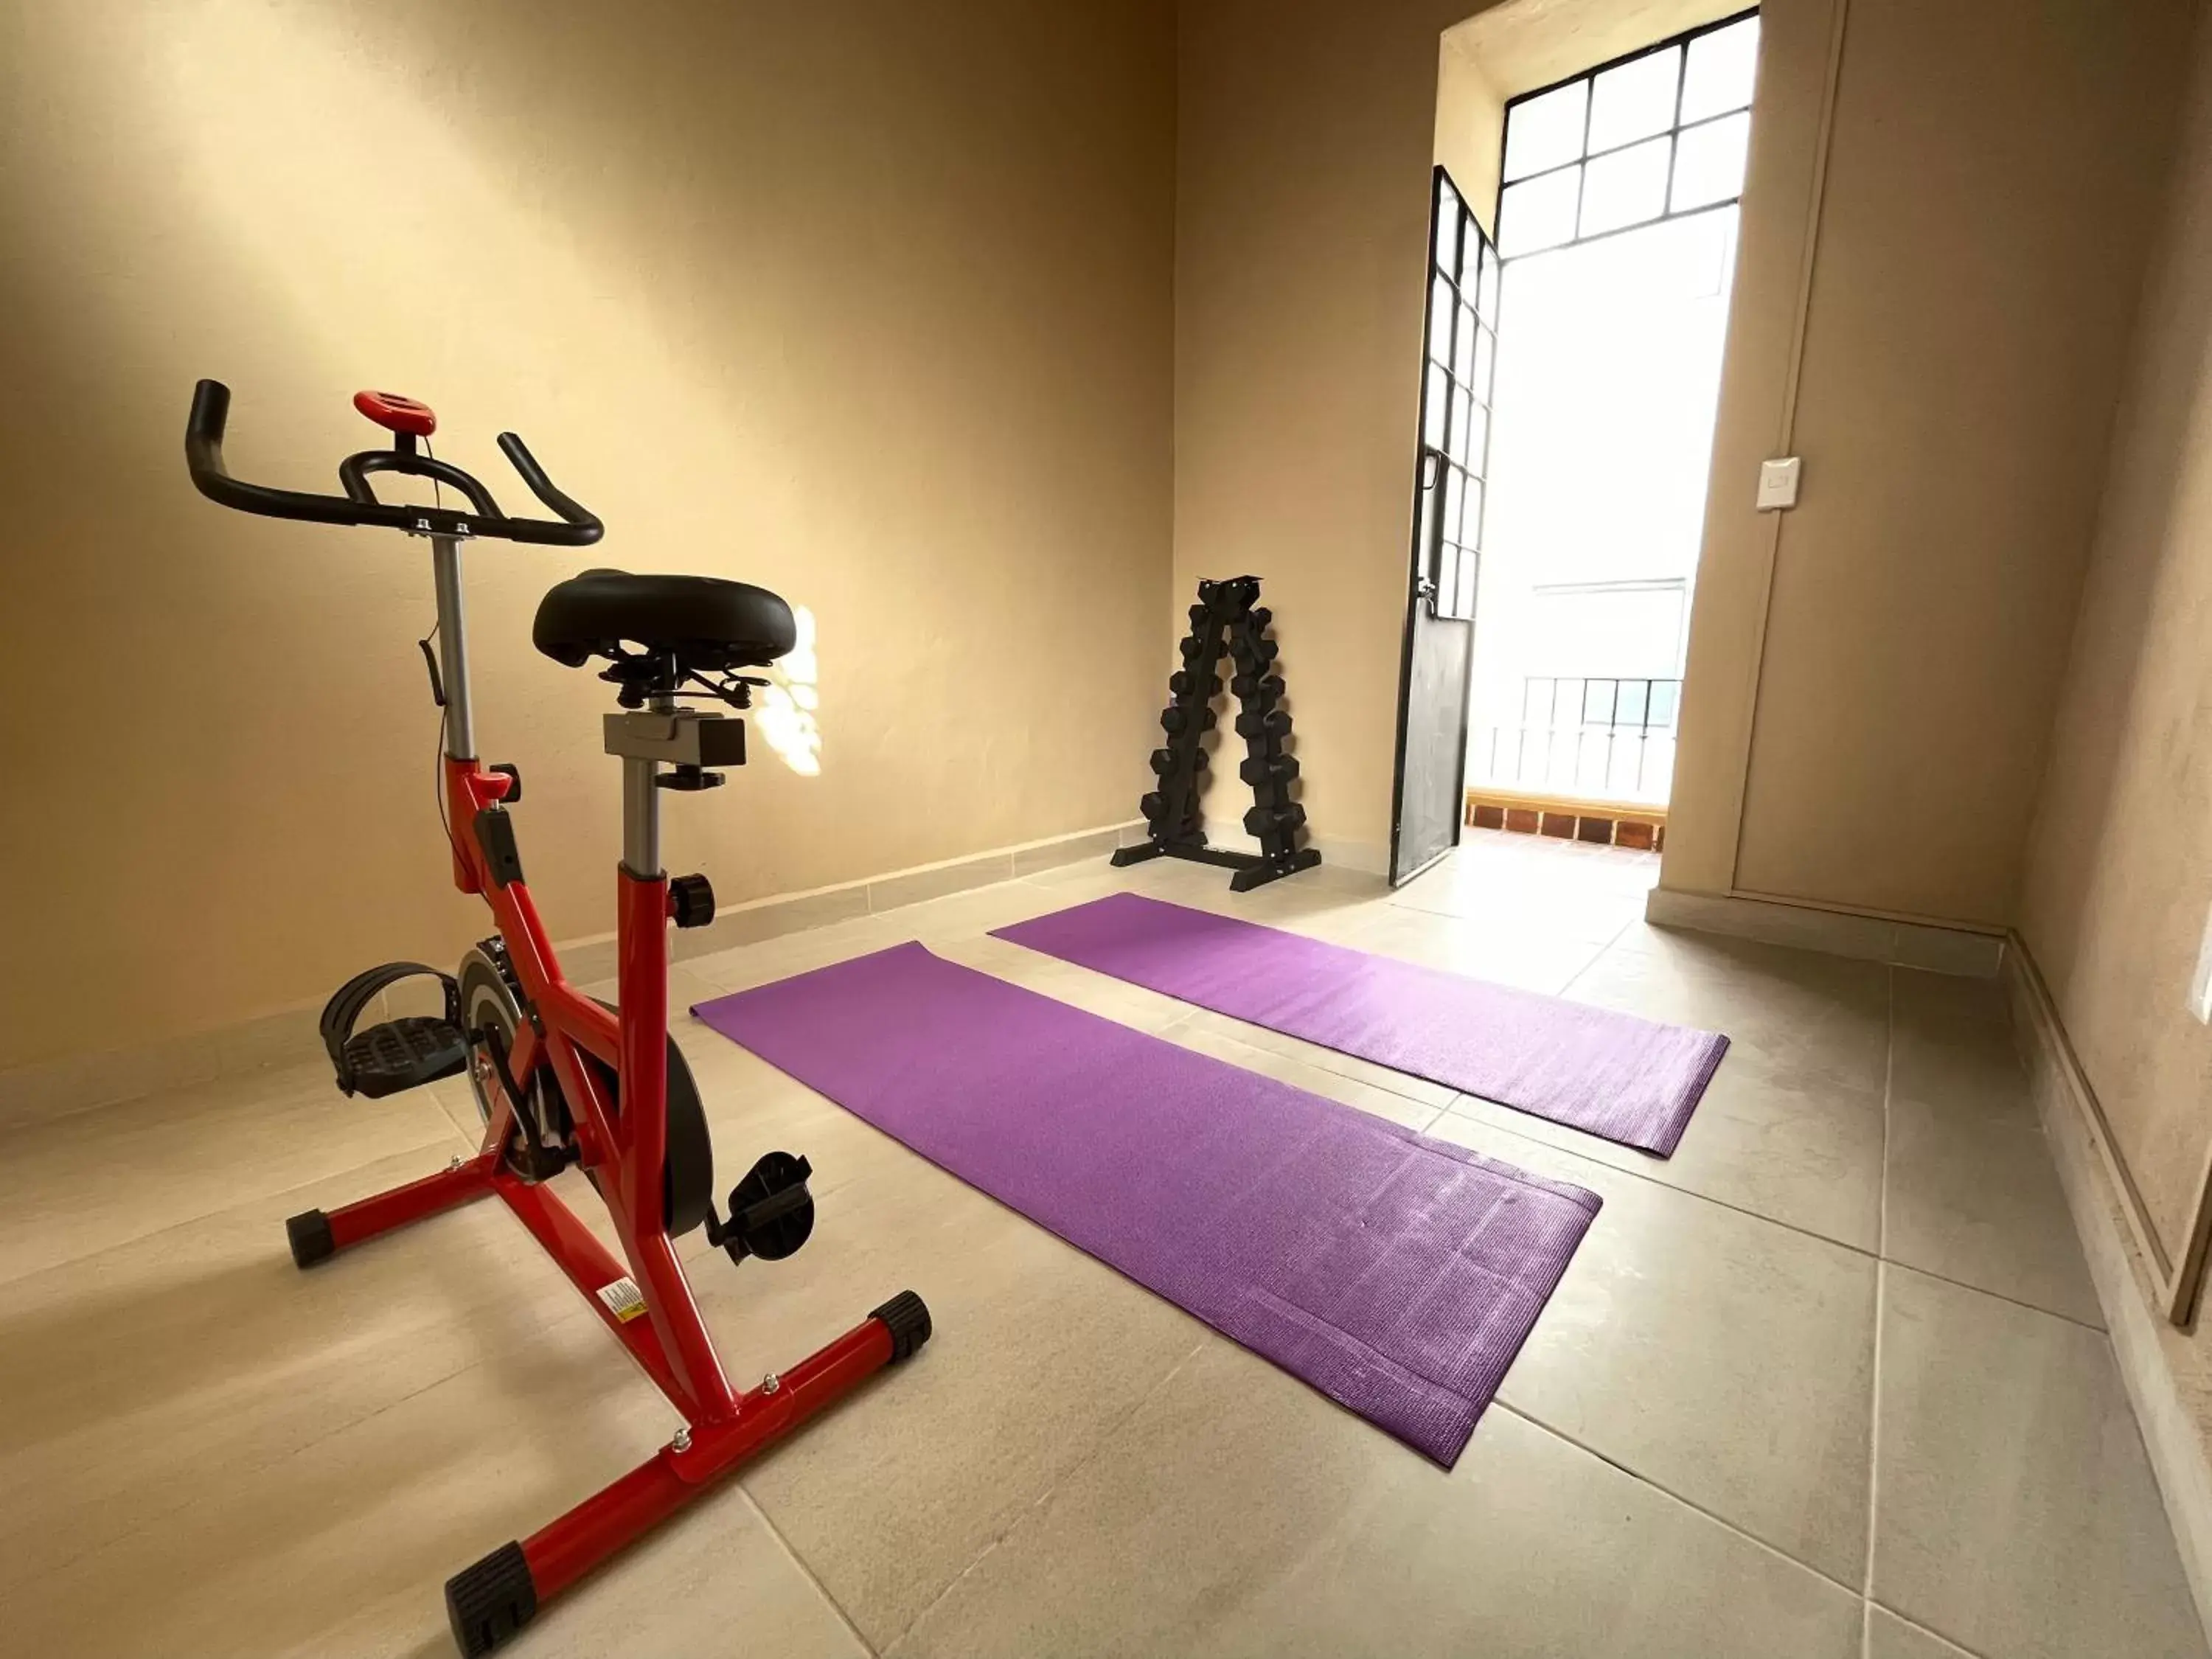 Fitness centre/facilities, Fitness Center/Facilities in Colmena Centro